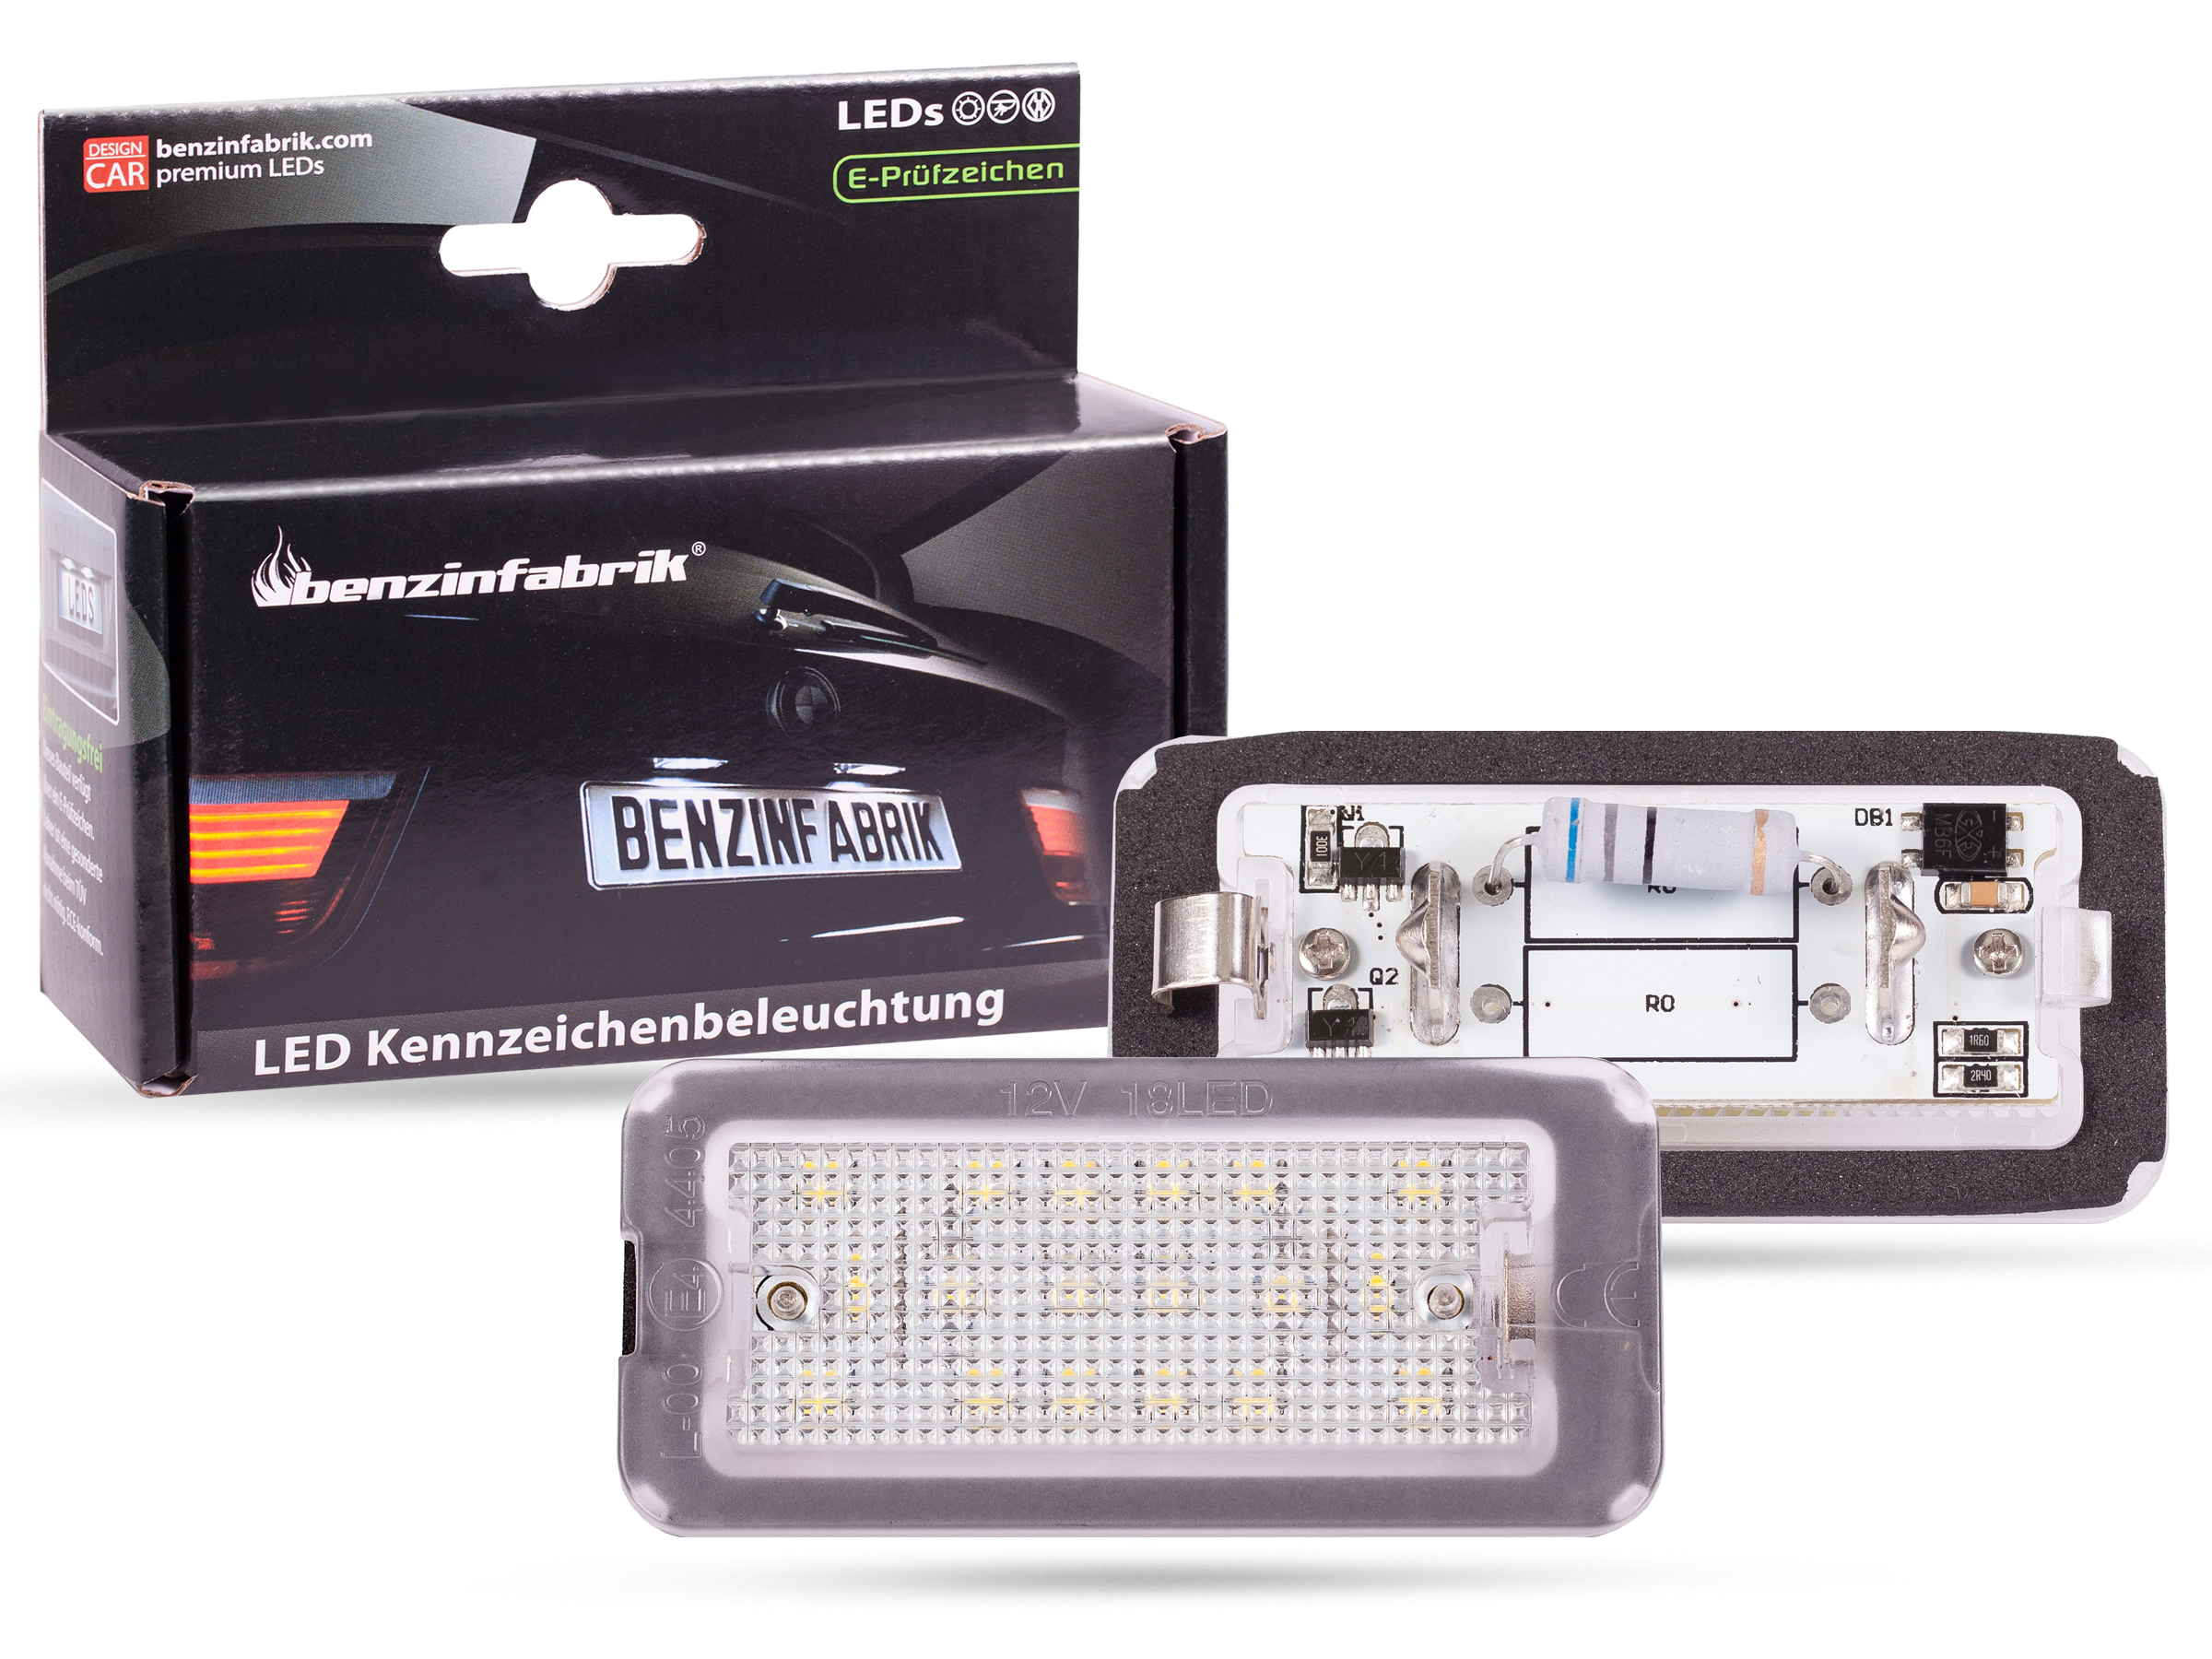 LED Kennzeichenbeleuchtung Module Fiat 500, Bj: 07-16, mit E-Prüfzeichen, LED  Kennzeichenbeleuchtung für Fiat, LED Kennzeichenbeleuchtung